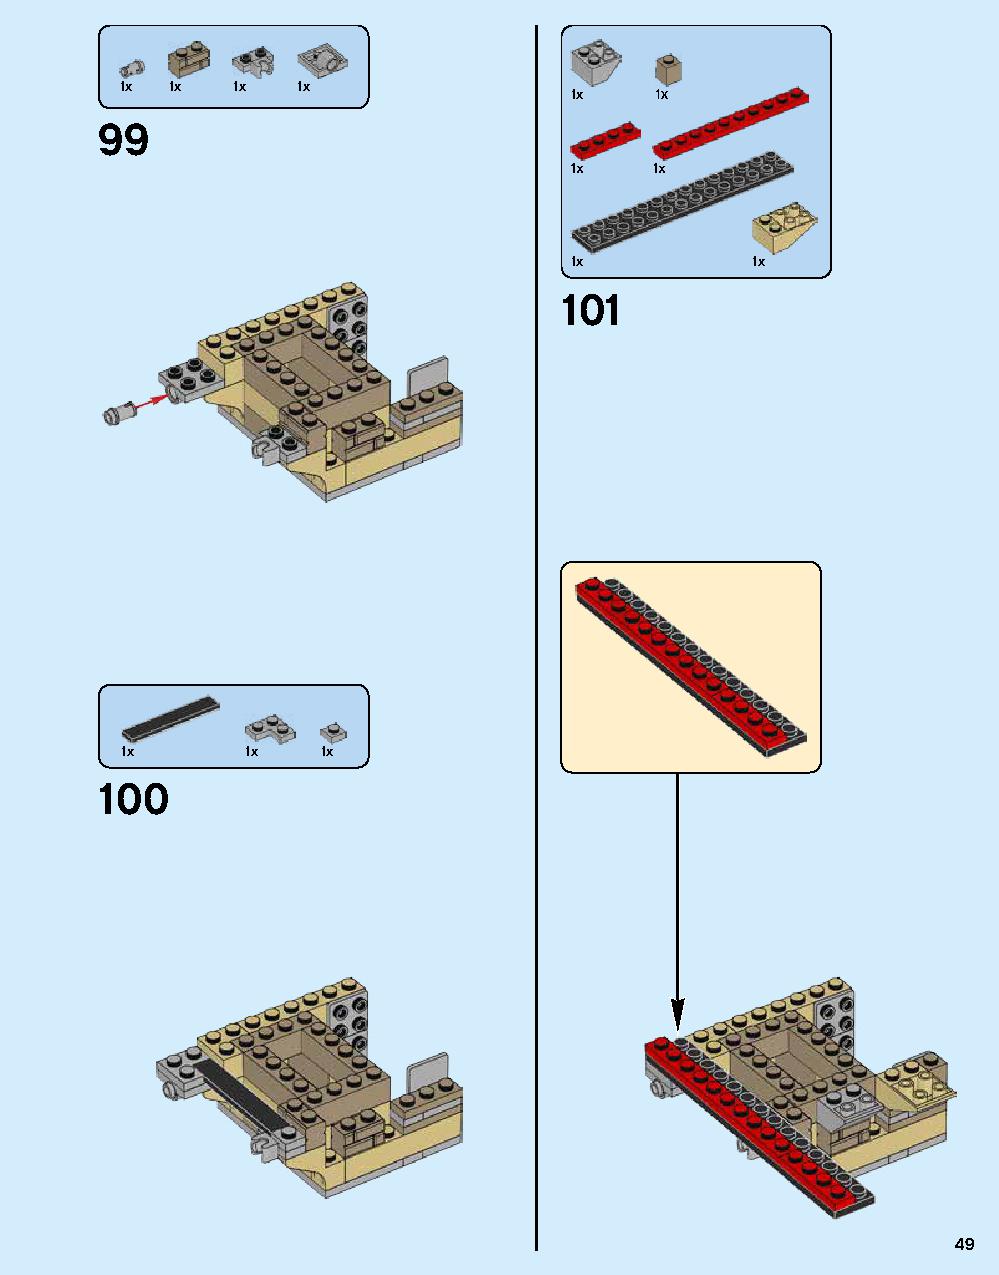 ニンジャゴー シティ 70620 レゴの商品情報 レゴの説明書・組立方法 49 page